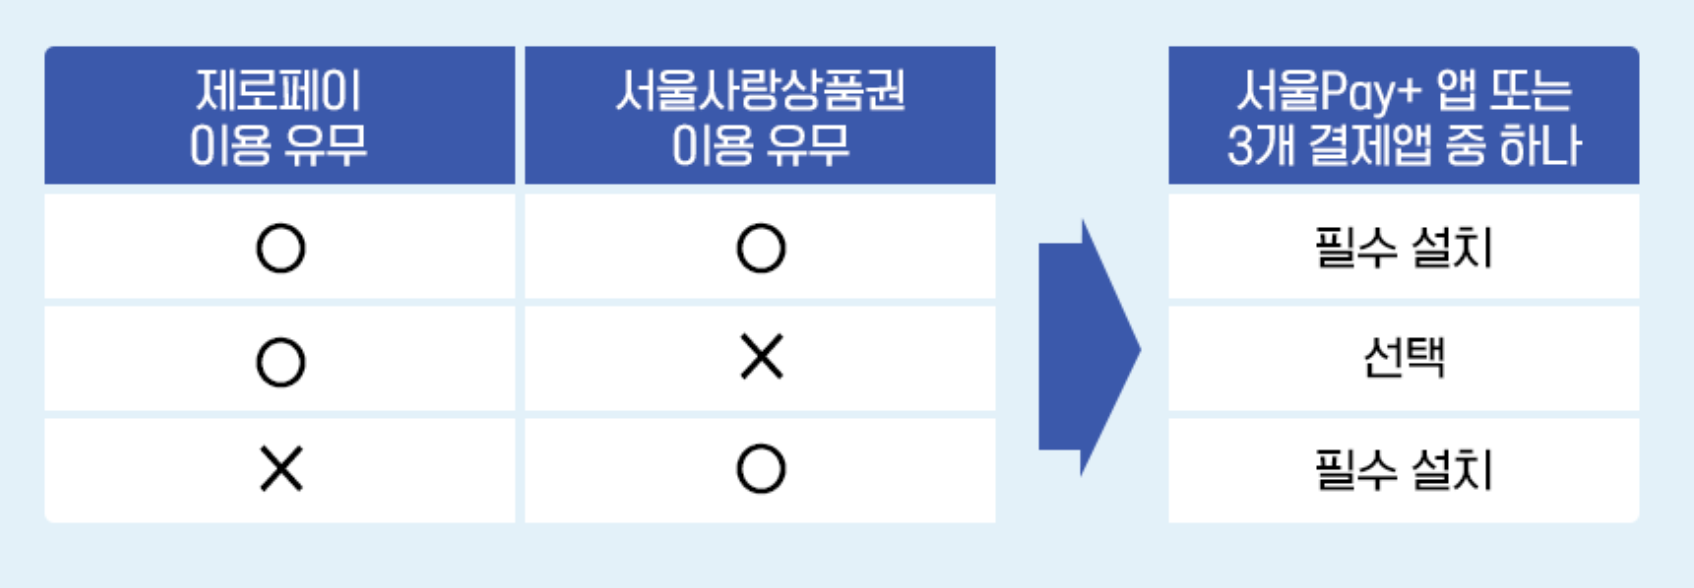 서울Pay+(서울페이플러스)와 제로페이 차이점